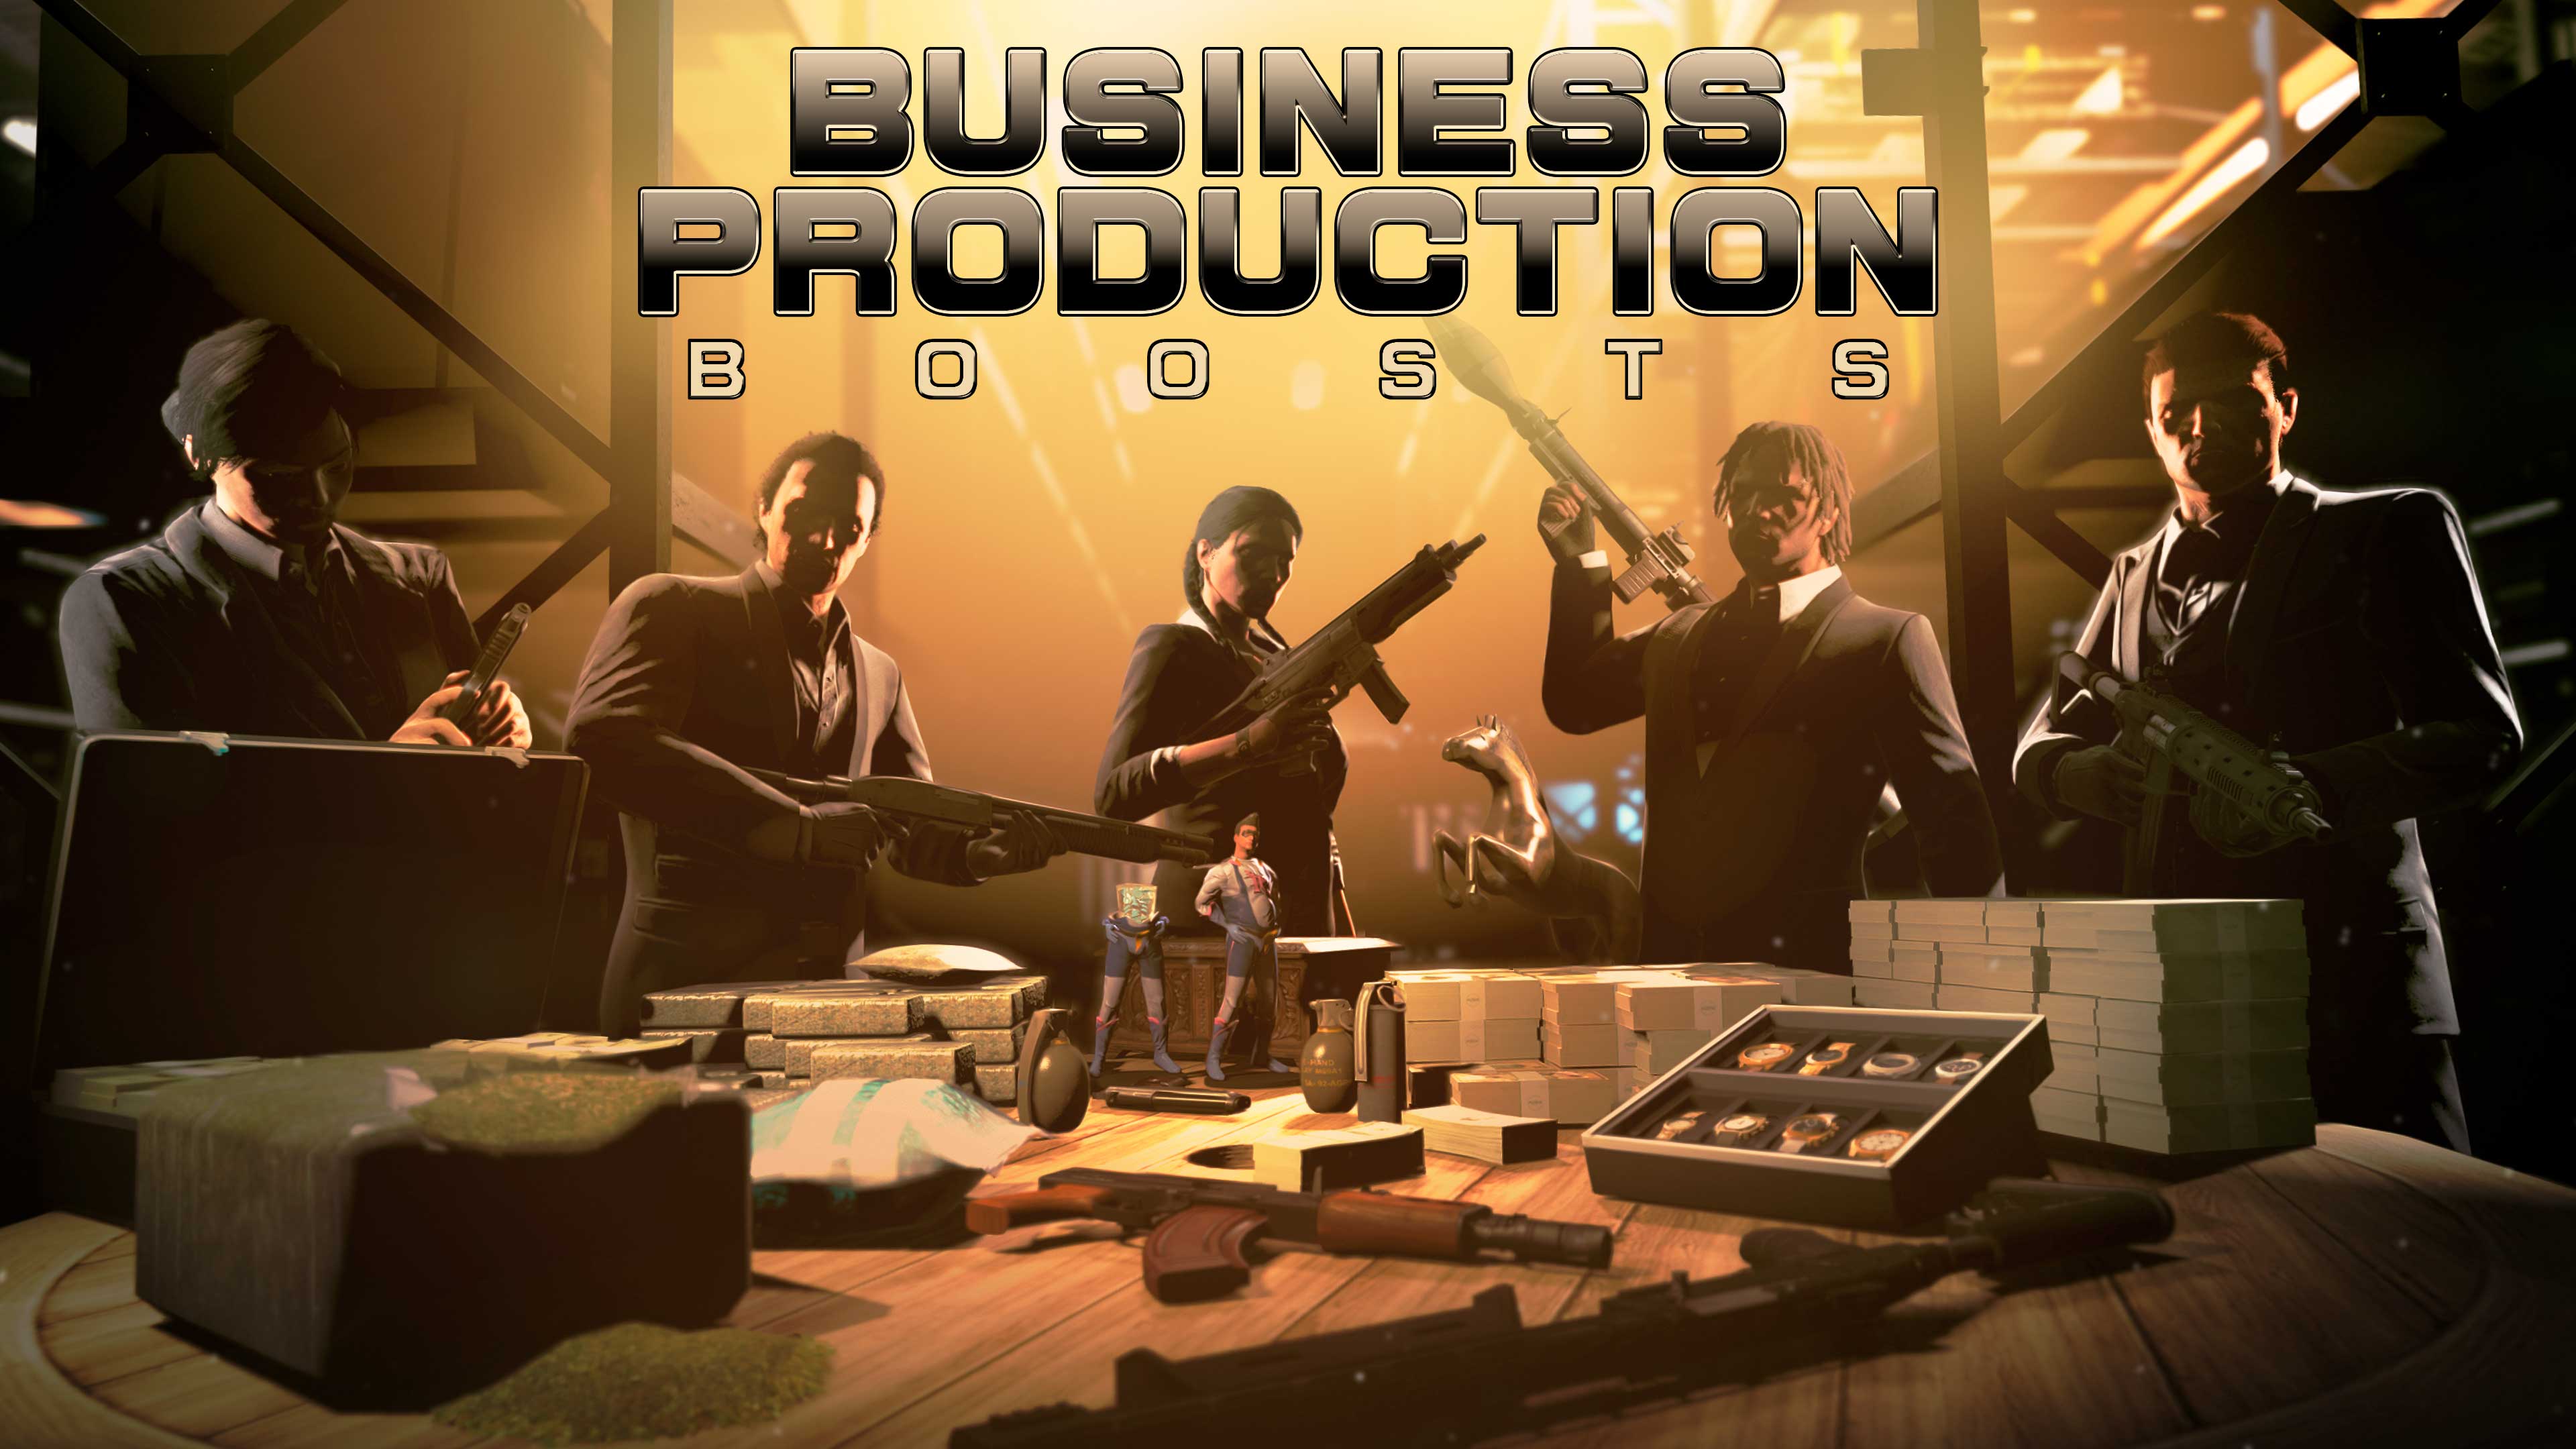 Pôster de Velocidades de produção aumentadas nos esquemas. Cinco personagens de GTA Online vestindo ternos ao redor de uma mesa com armas, dinheiro, drogas e raridades.